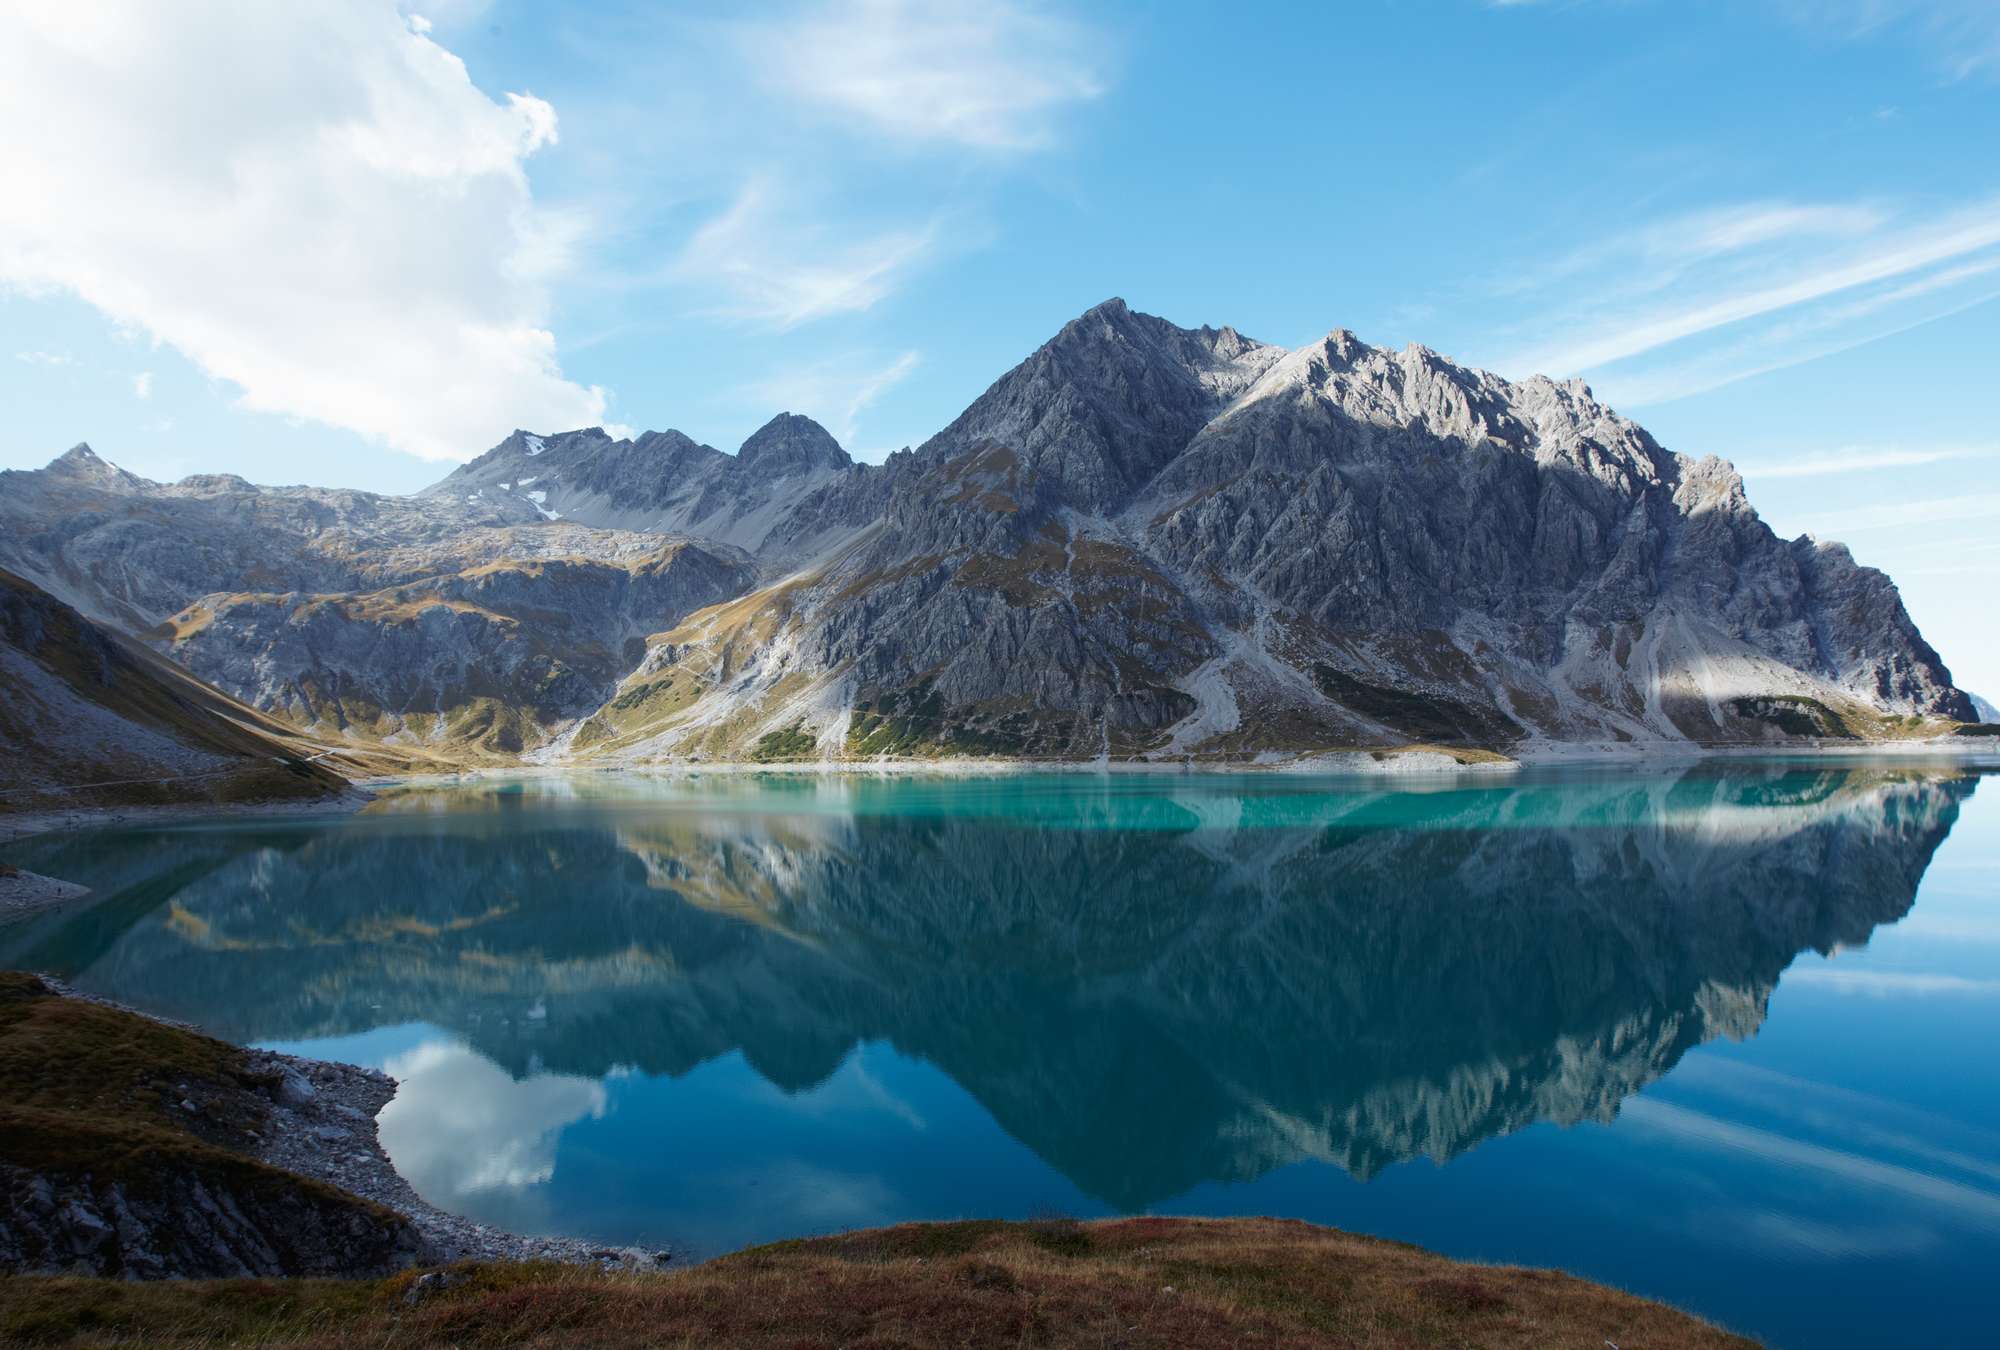             Lac de montagne clair - Papier peint Nature Panorama Lac de montagne Idylle
        